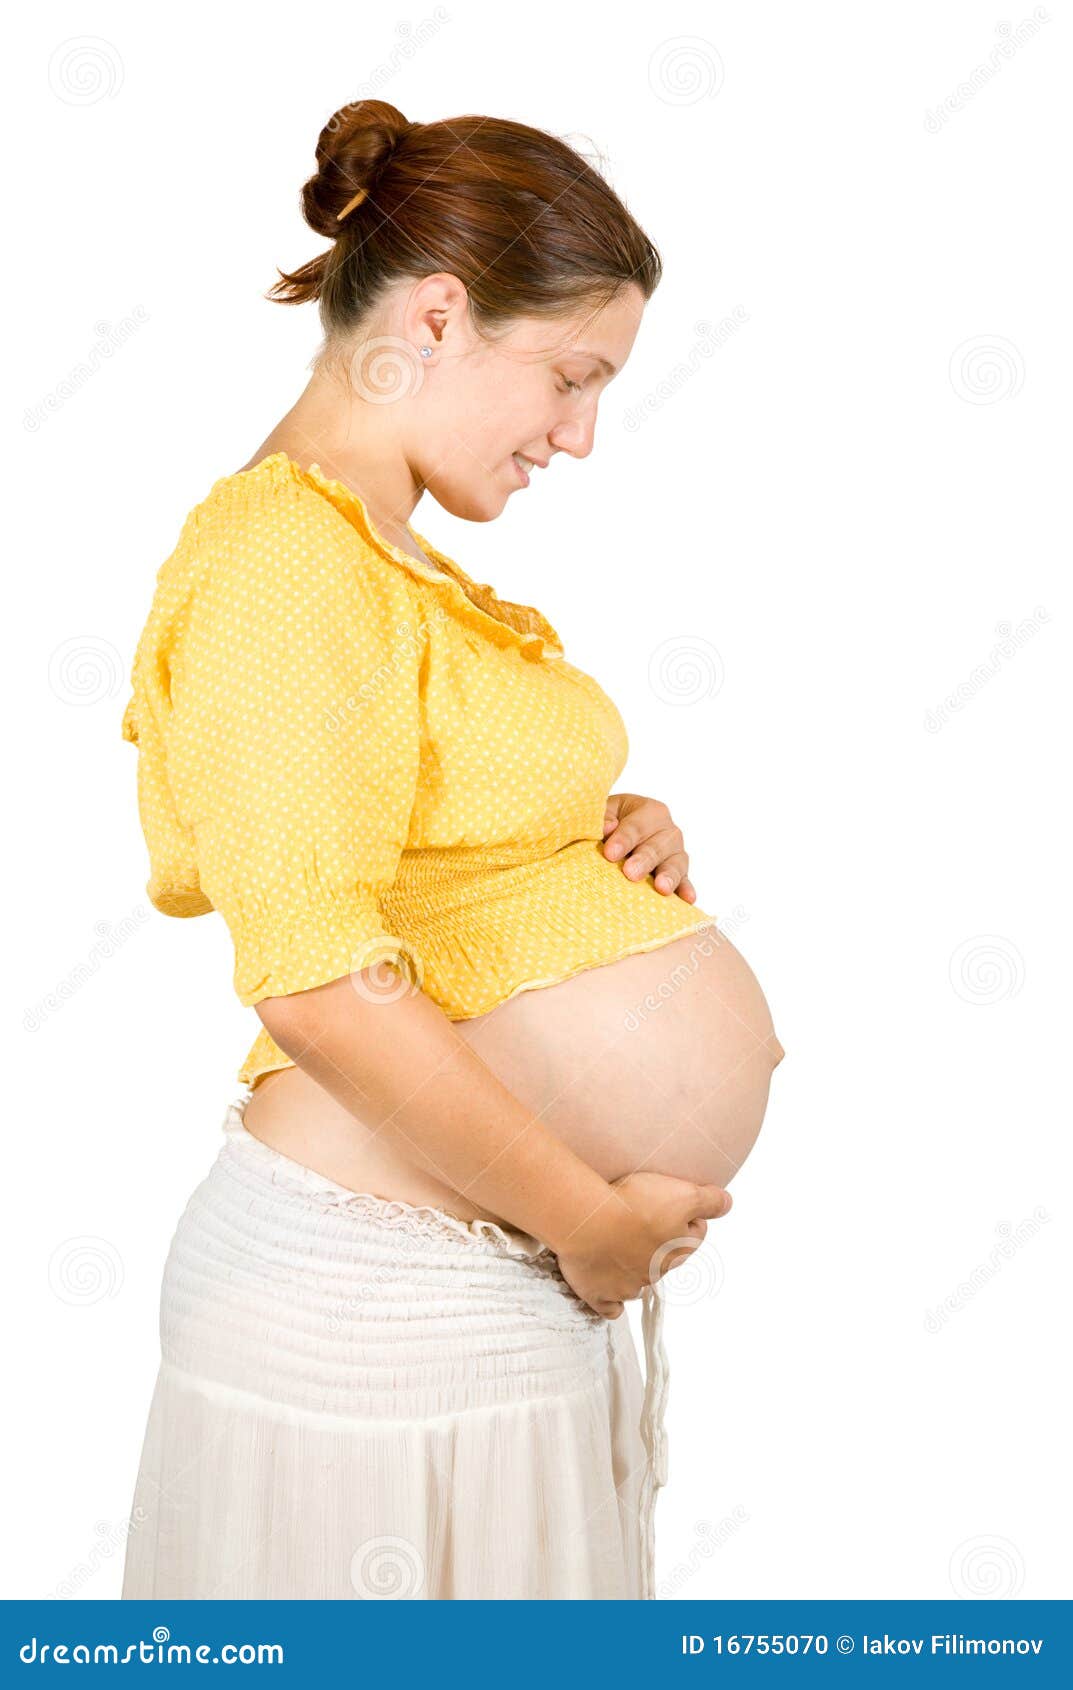 Frau sucht mann für schwanger